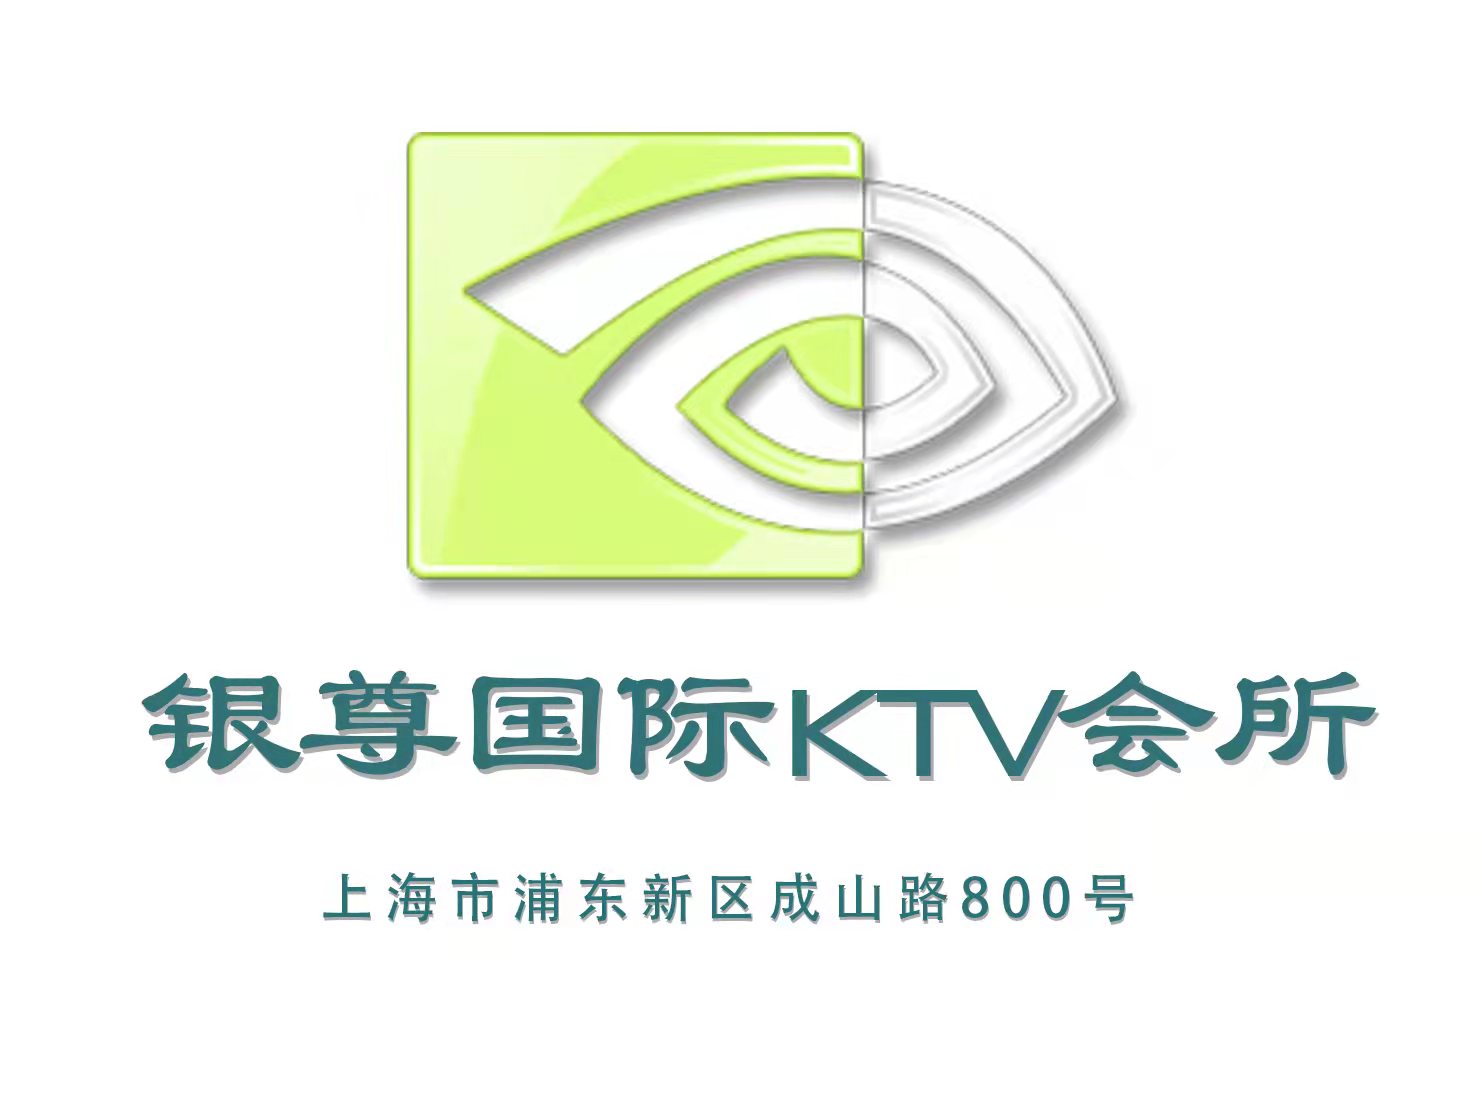 上海银尊国际KTV会所